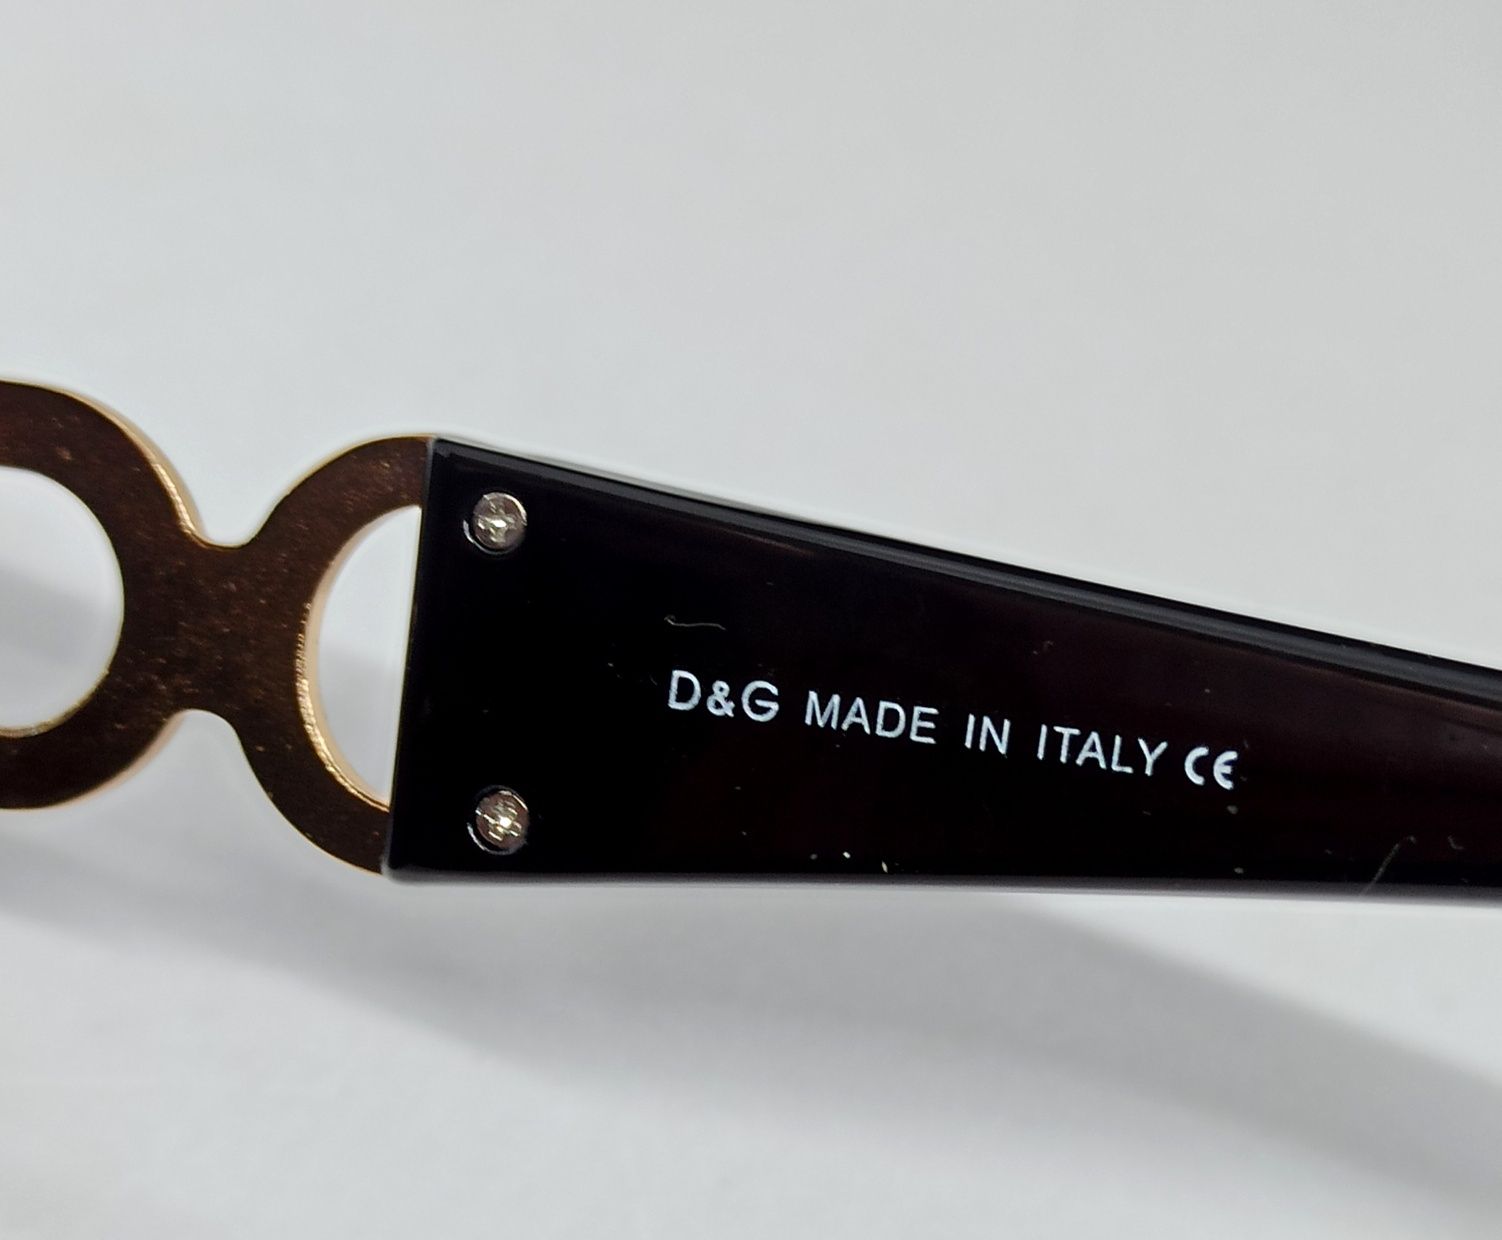 Dolce & Gabbana очки женские большие черные с золотым логотипом